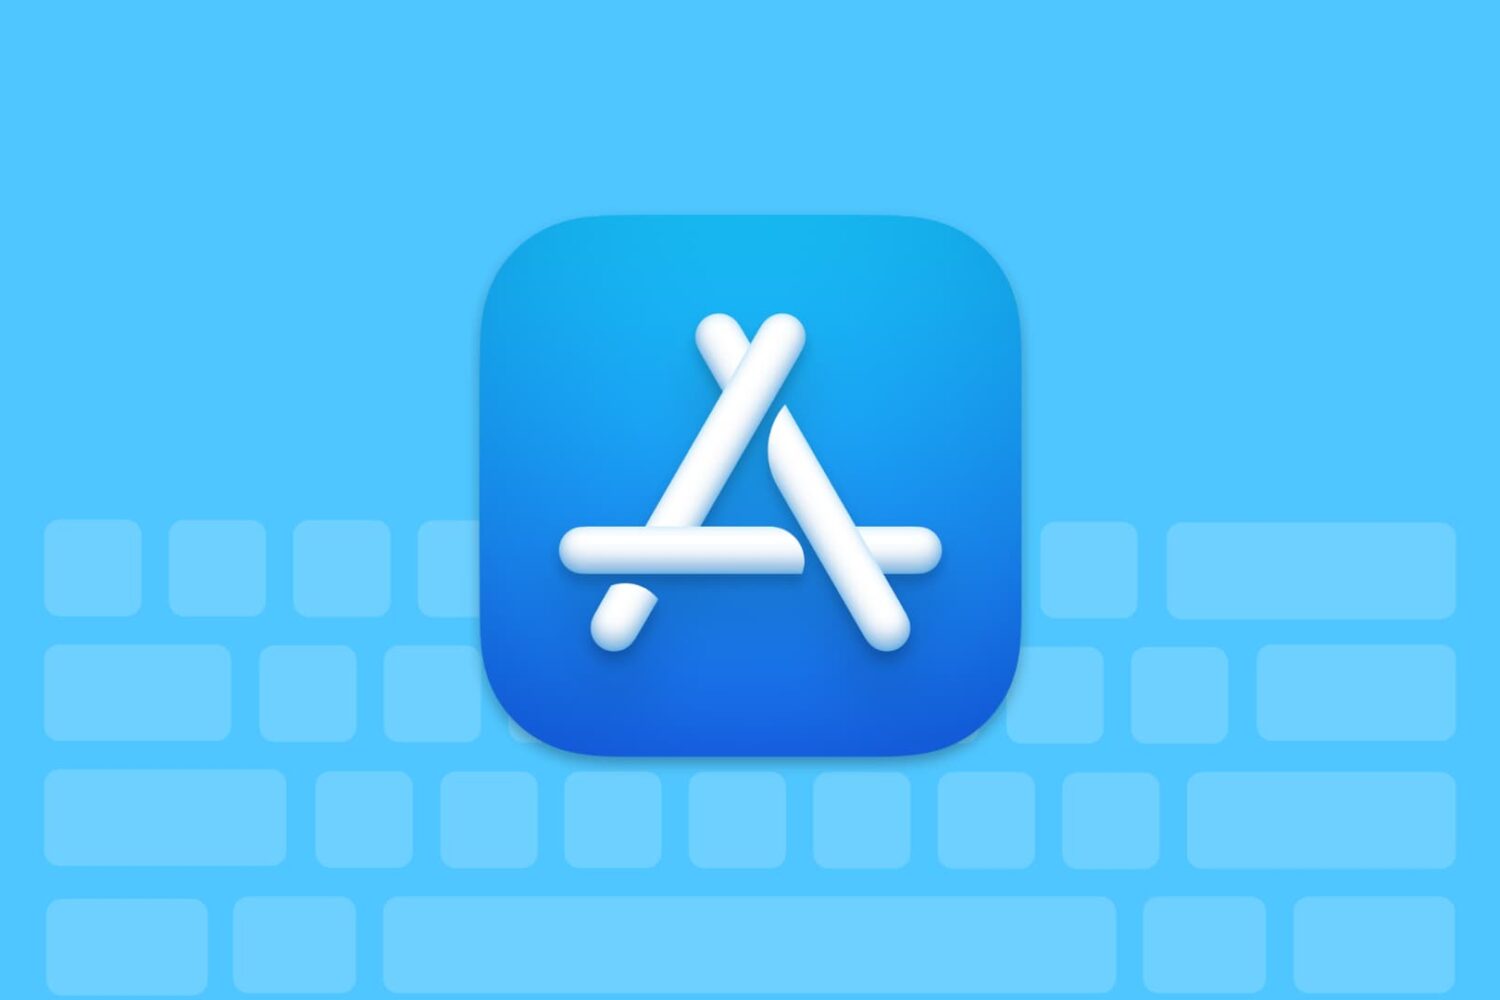 Apple App Store keyboard shortcuts